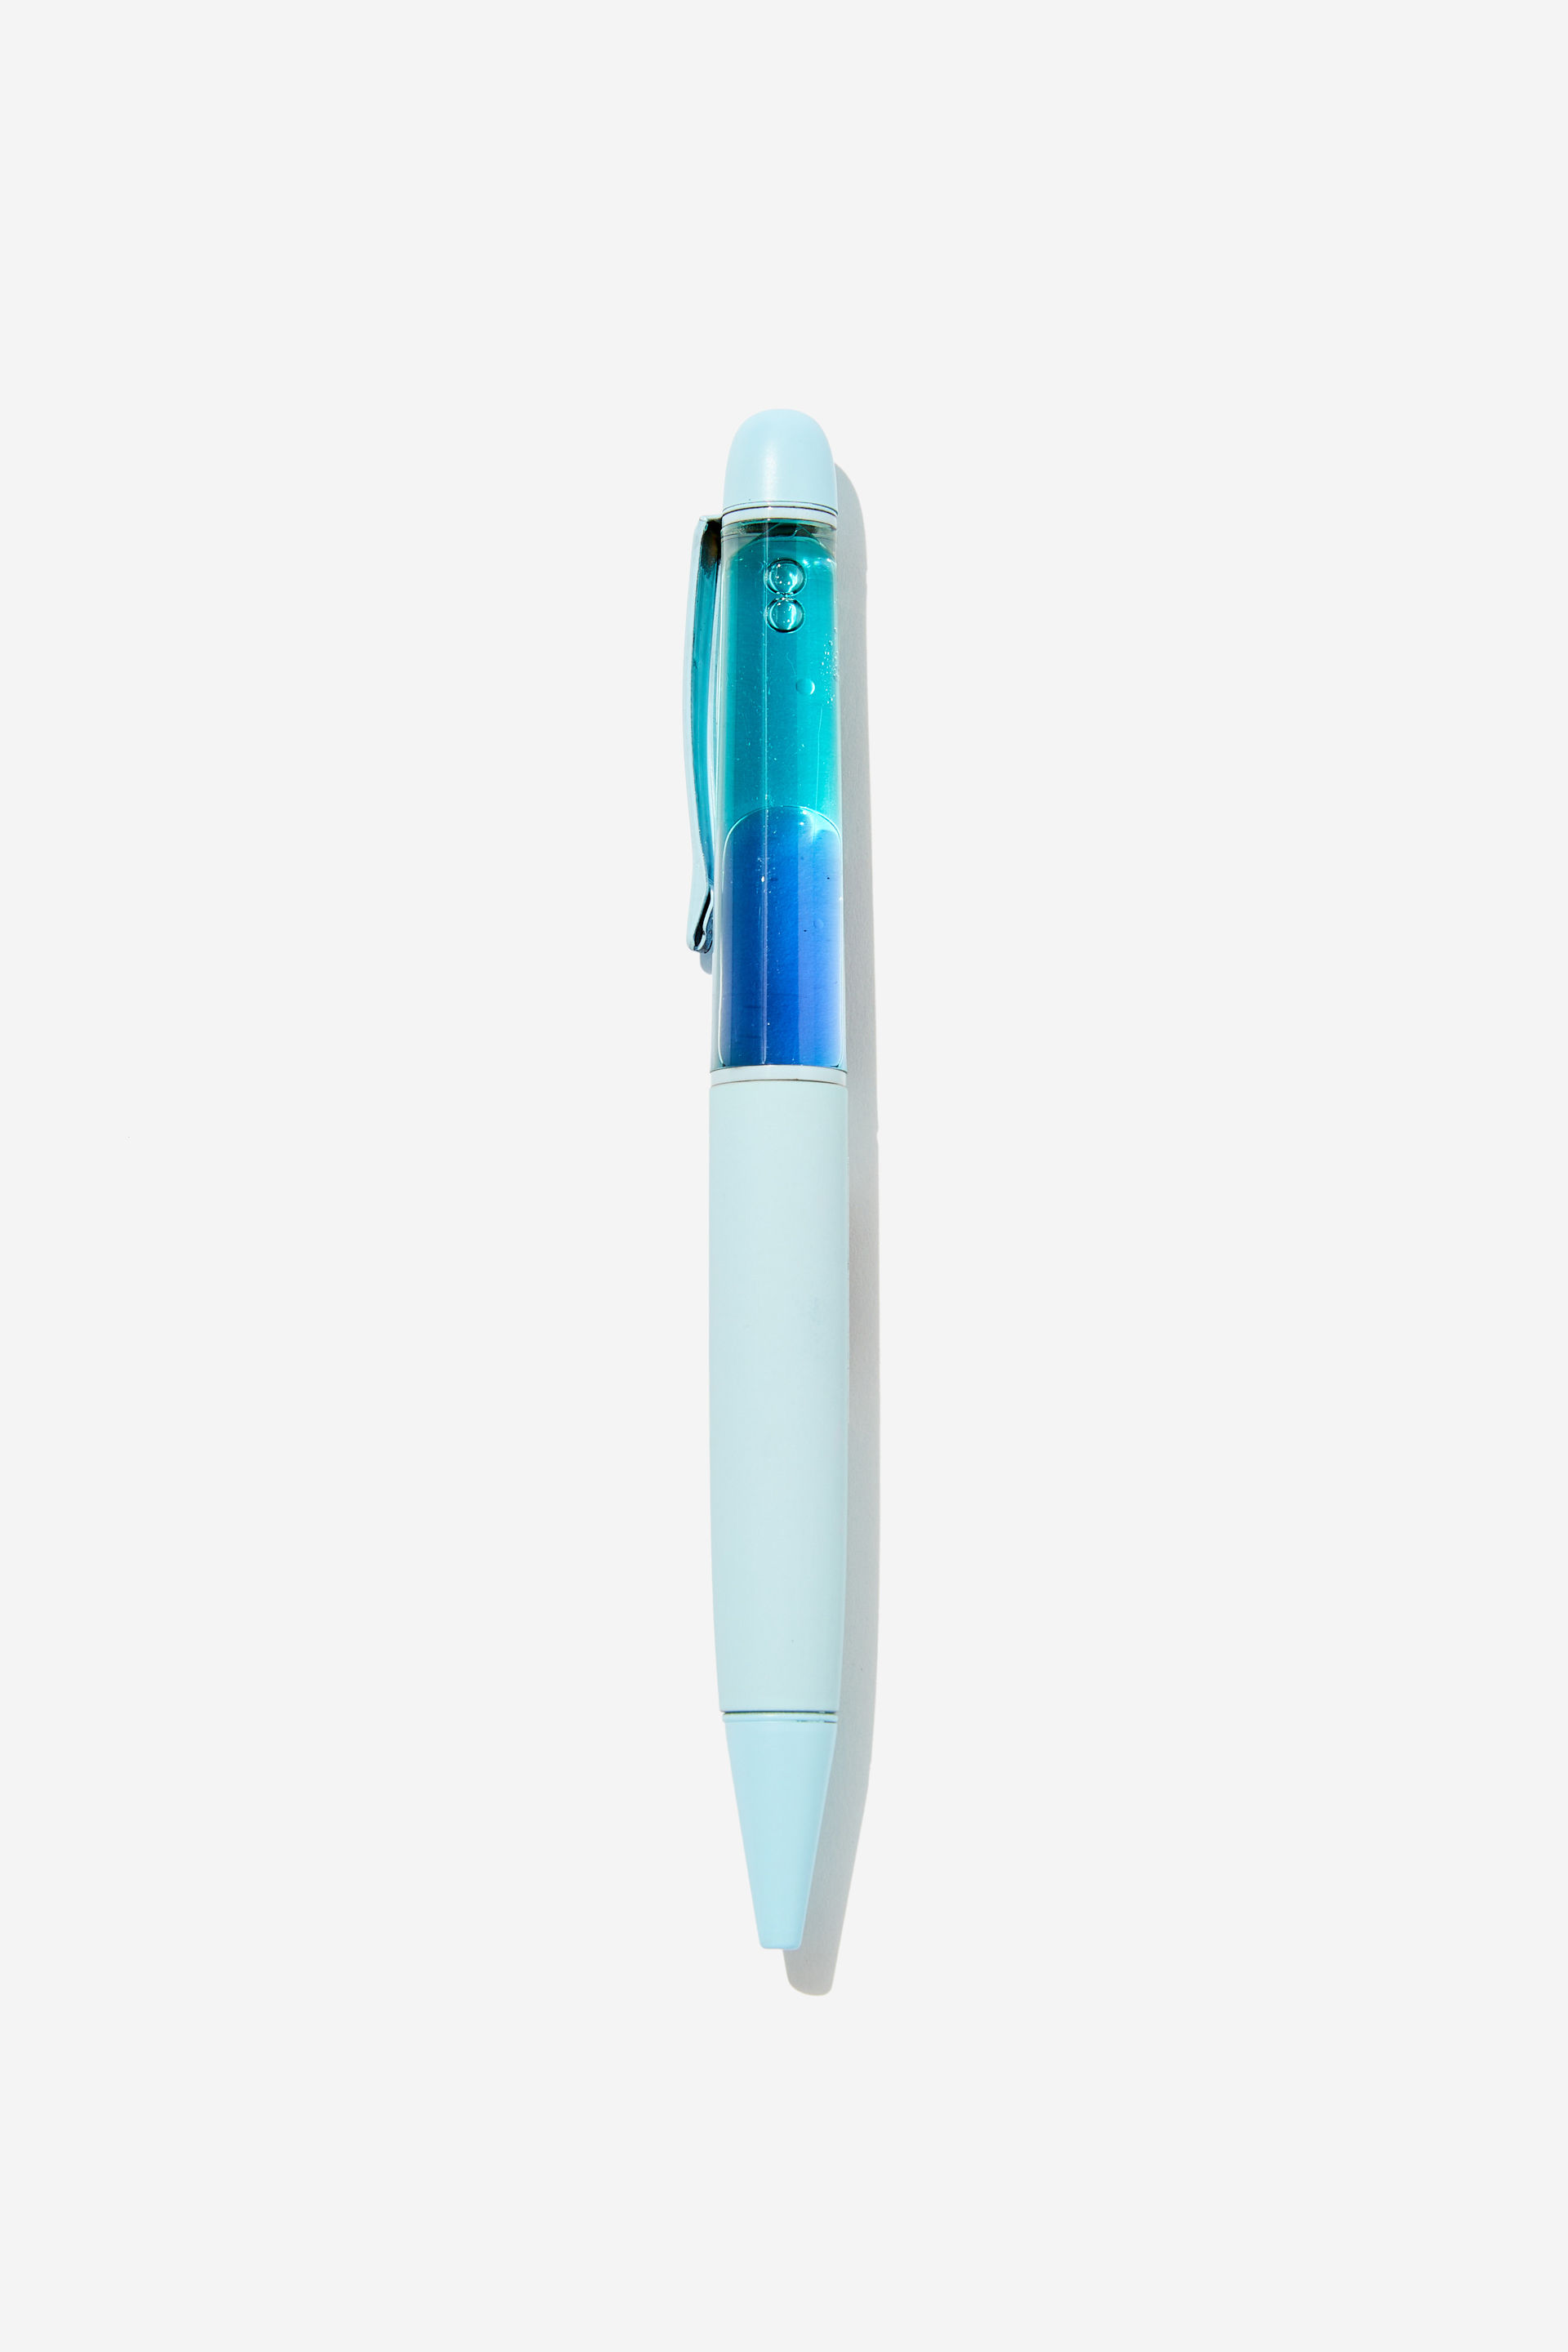 Typo - Lava Pen - Arctic blue